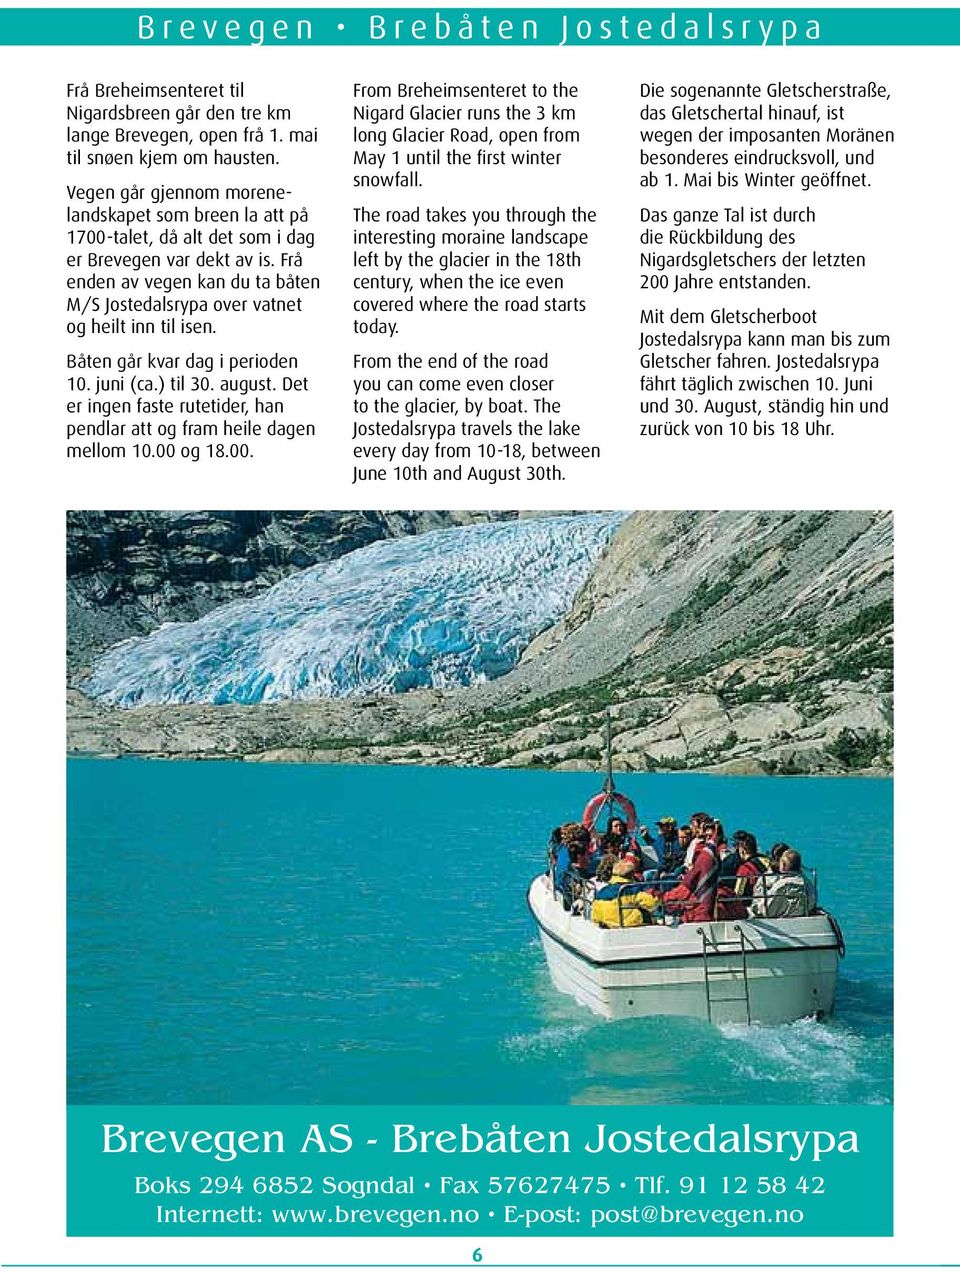 Frå enden av vegen kan du ta båten M/S Jostedalsrypa over vatnet og heilt inn til isen. Båten går kvar dag i perioden 10. juni (ca.) til 30. august.